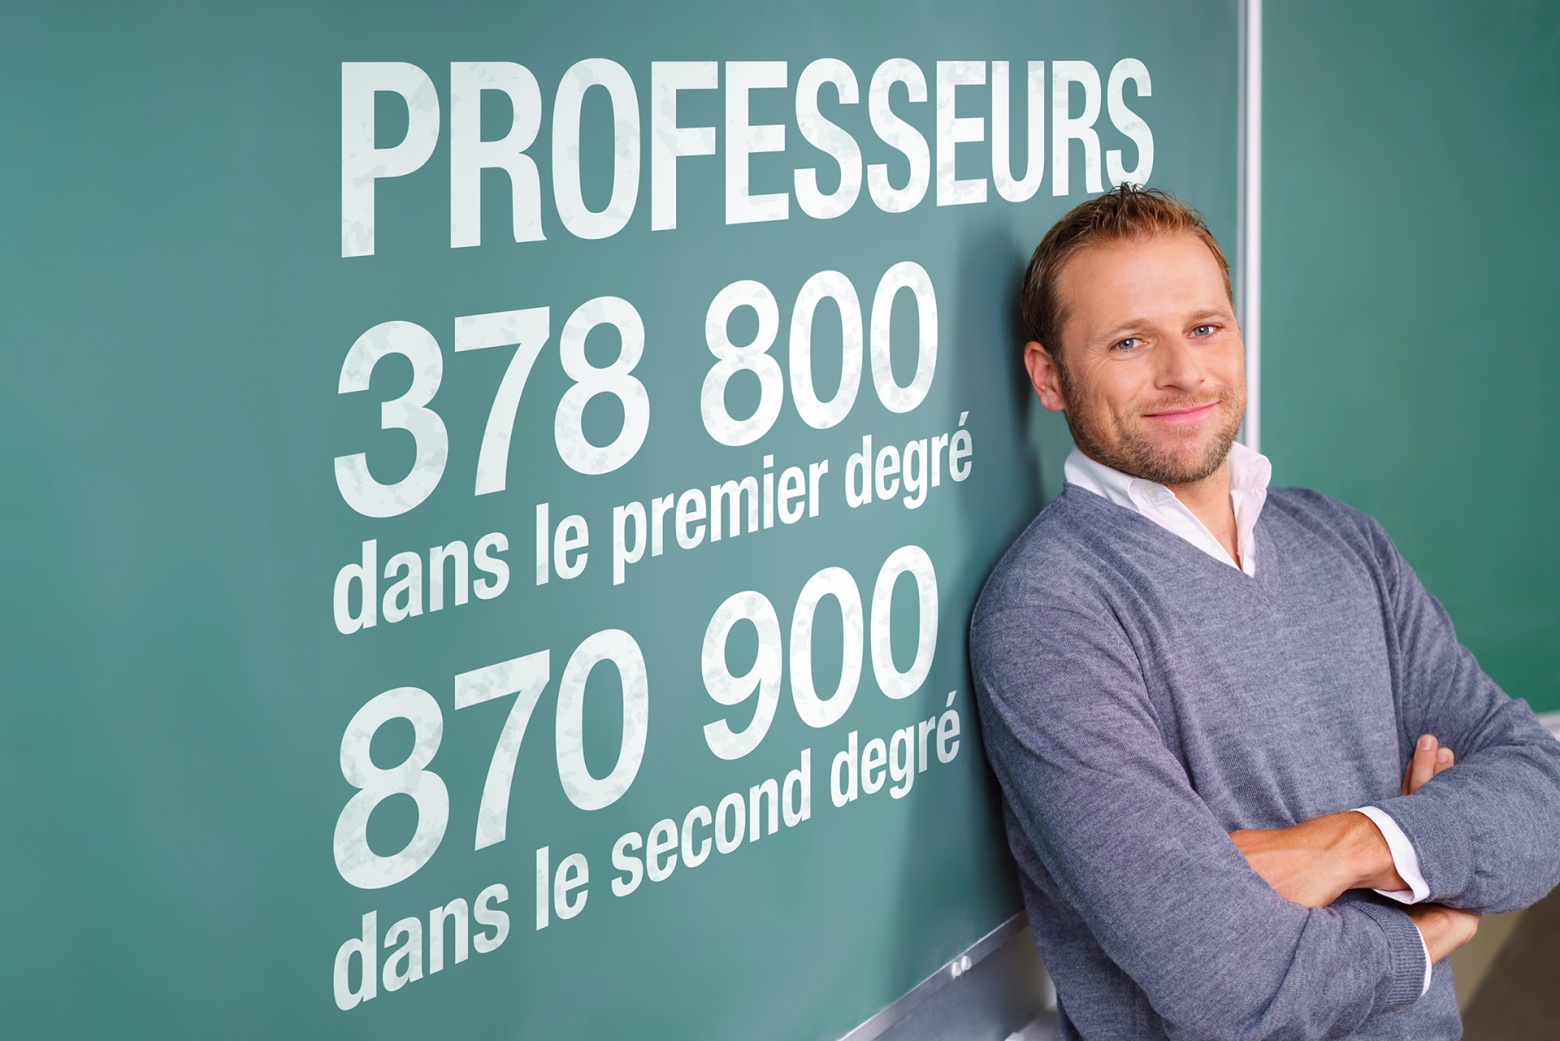 photographie d'un professeur adossé au tableau et texte sur le nombre de professeurs en France 378 800 dans le premier degré 870 900 dans le second degré 